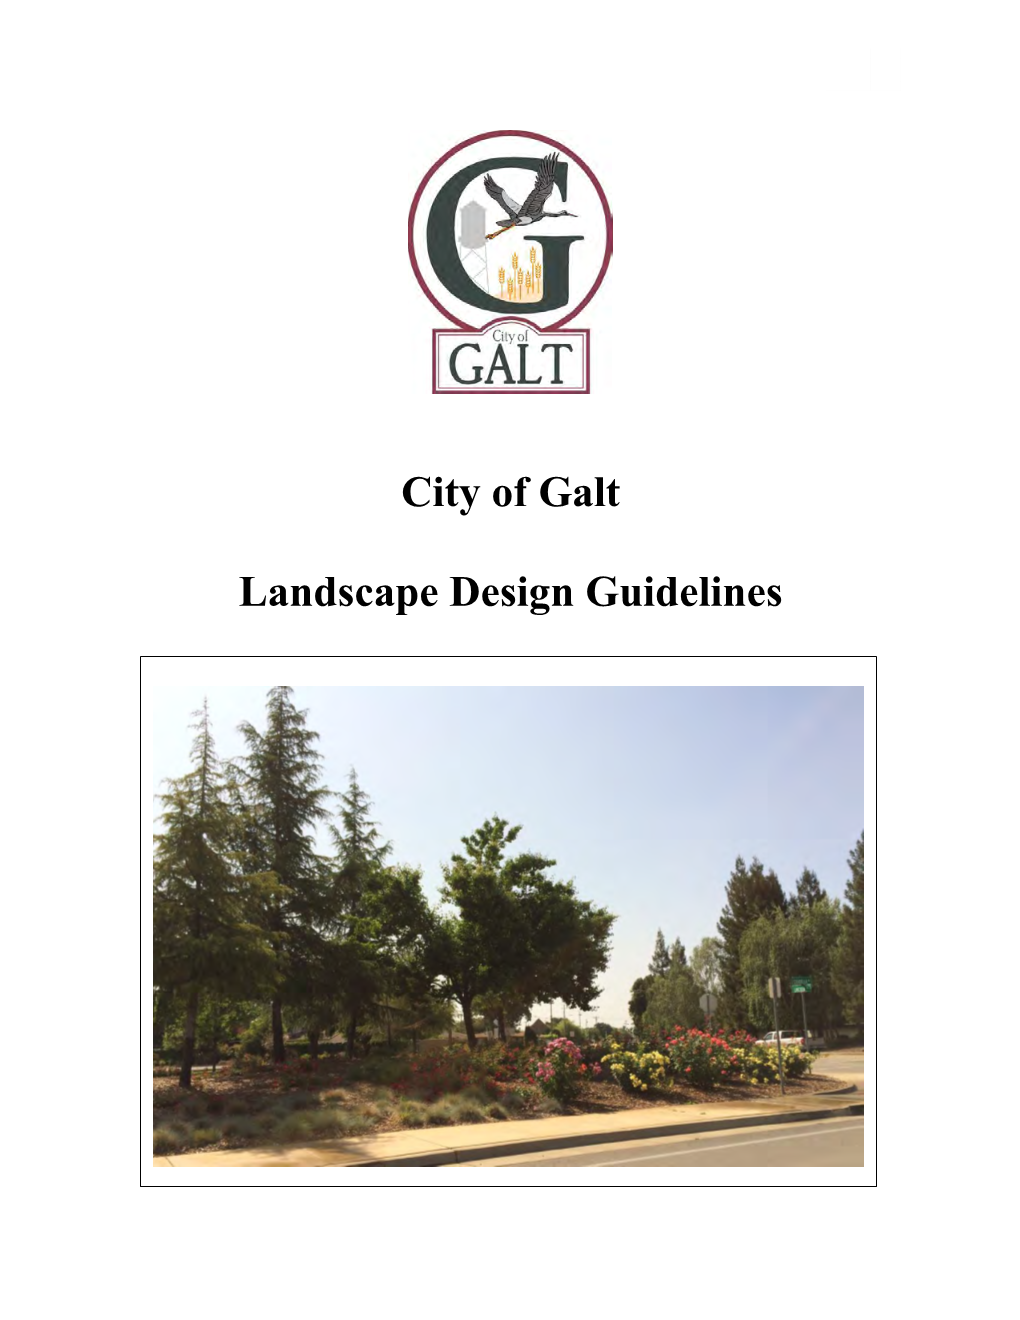 City of Galt Landscape Design Guidelines